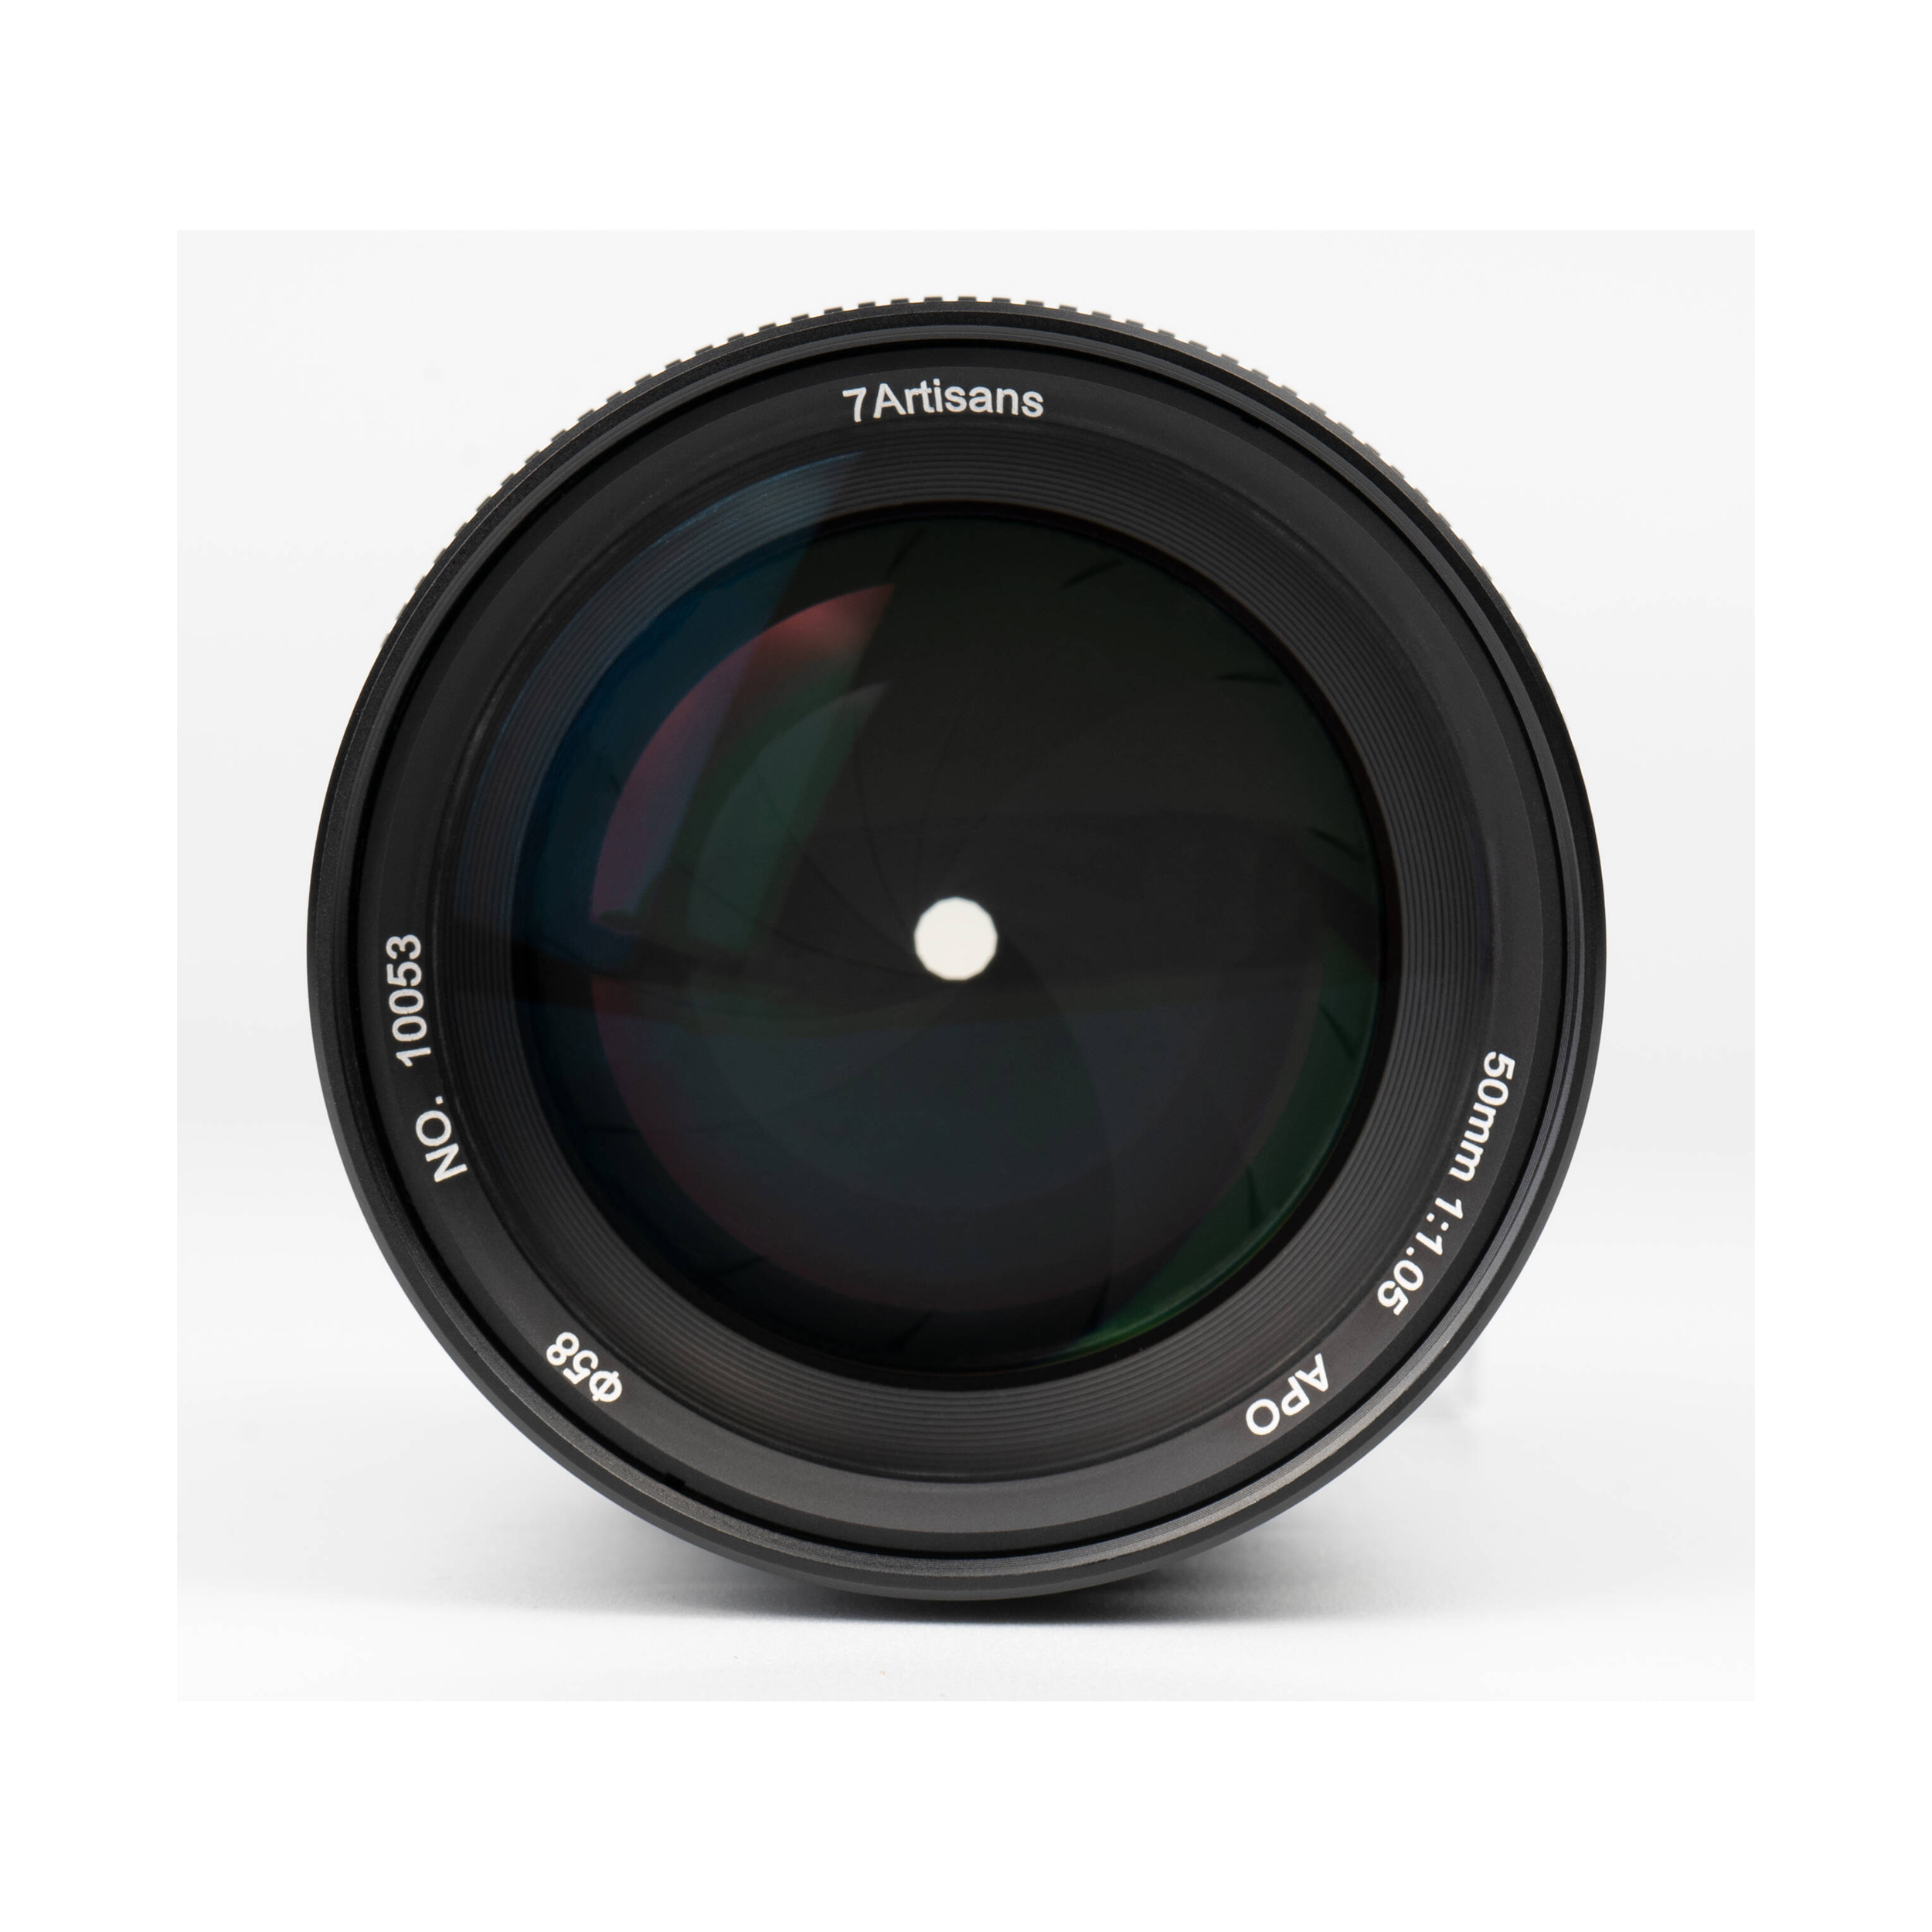 7artisans Photoelectric 50mm f/1.05 Lens for Sony E Mount